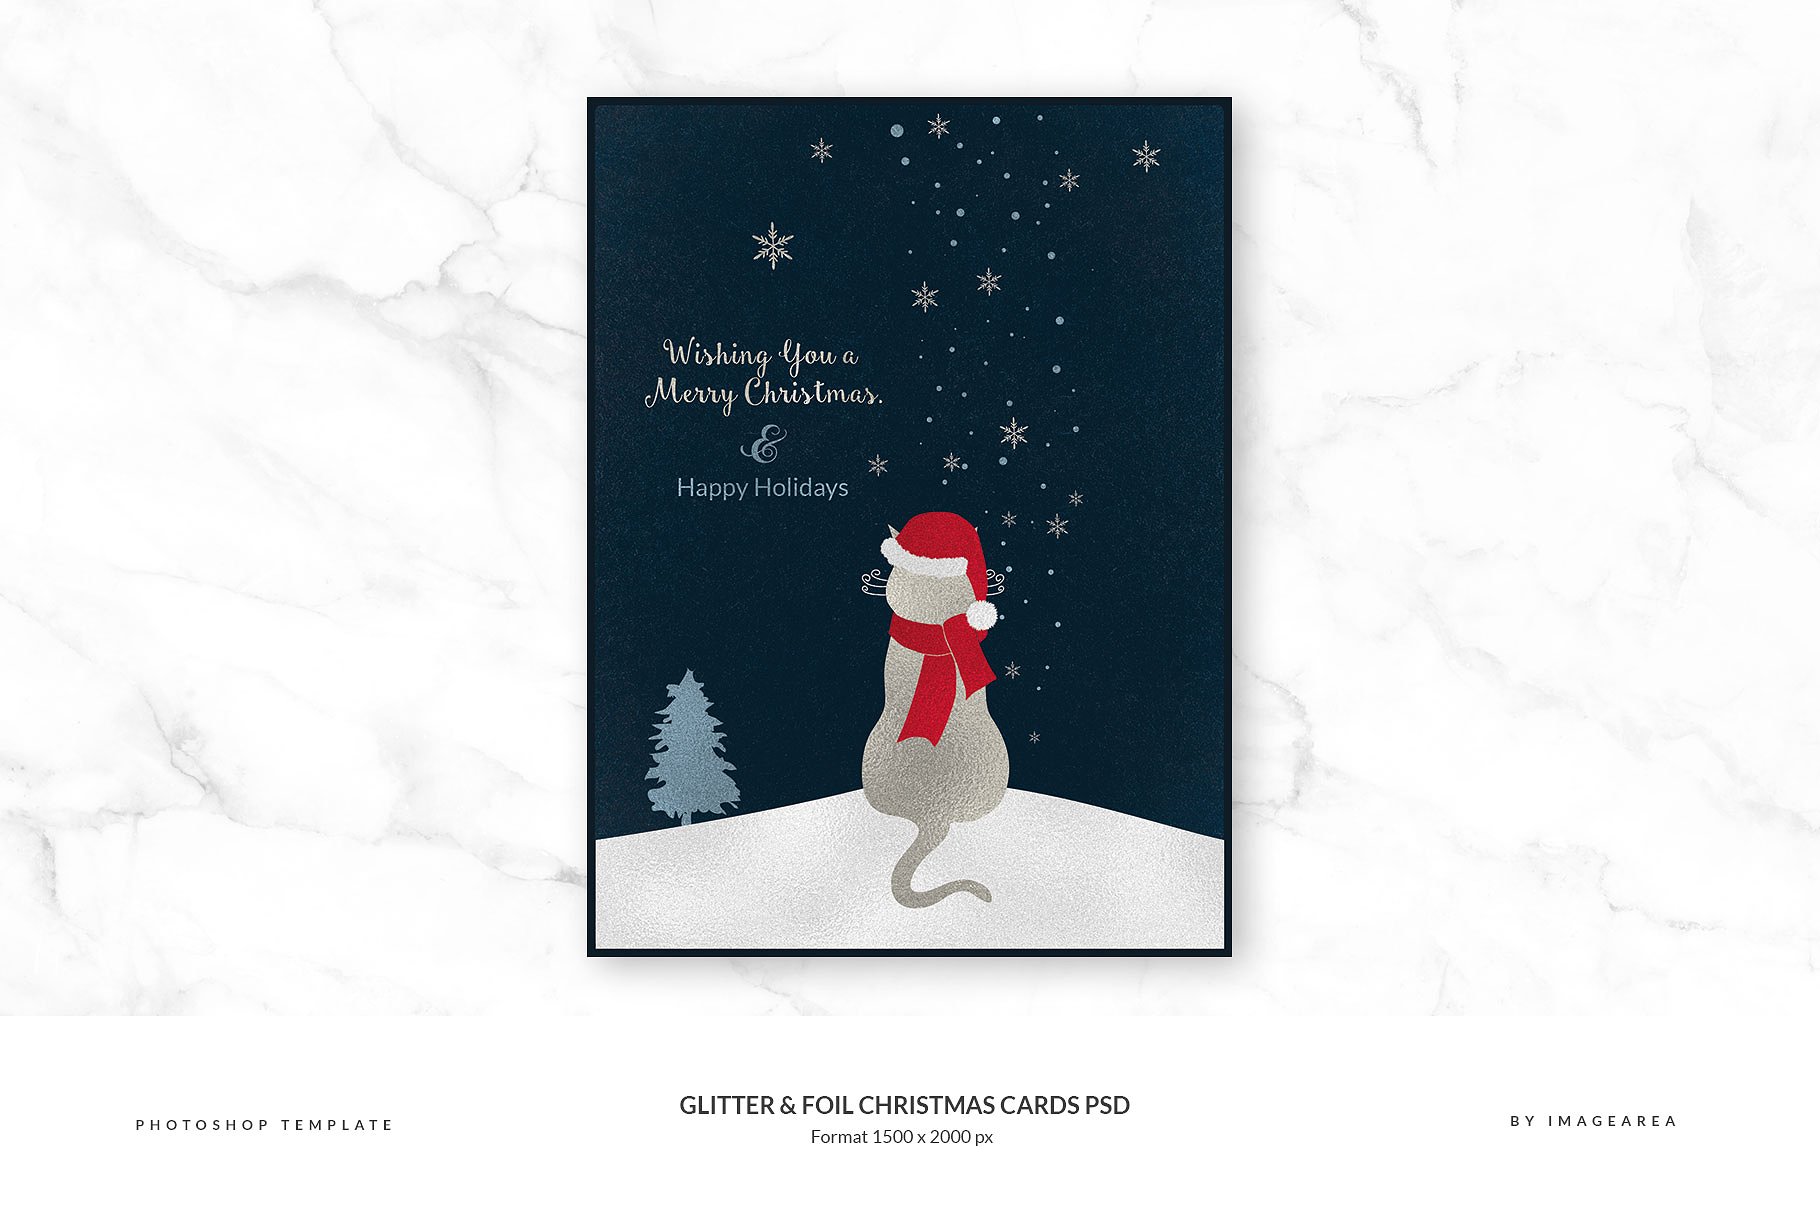 闪粉&金箔圣诞卡PSD模板合集 Glitter & Foil Christmas Cards PSD插图(4)